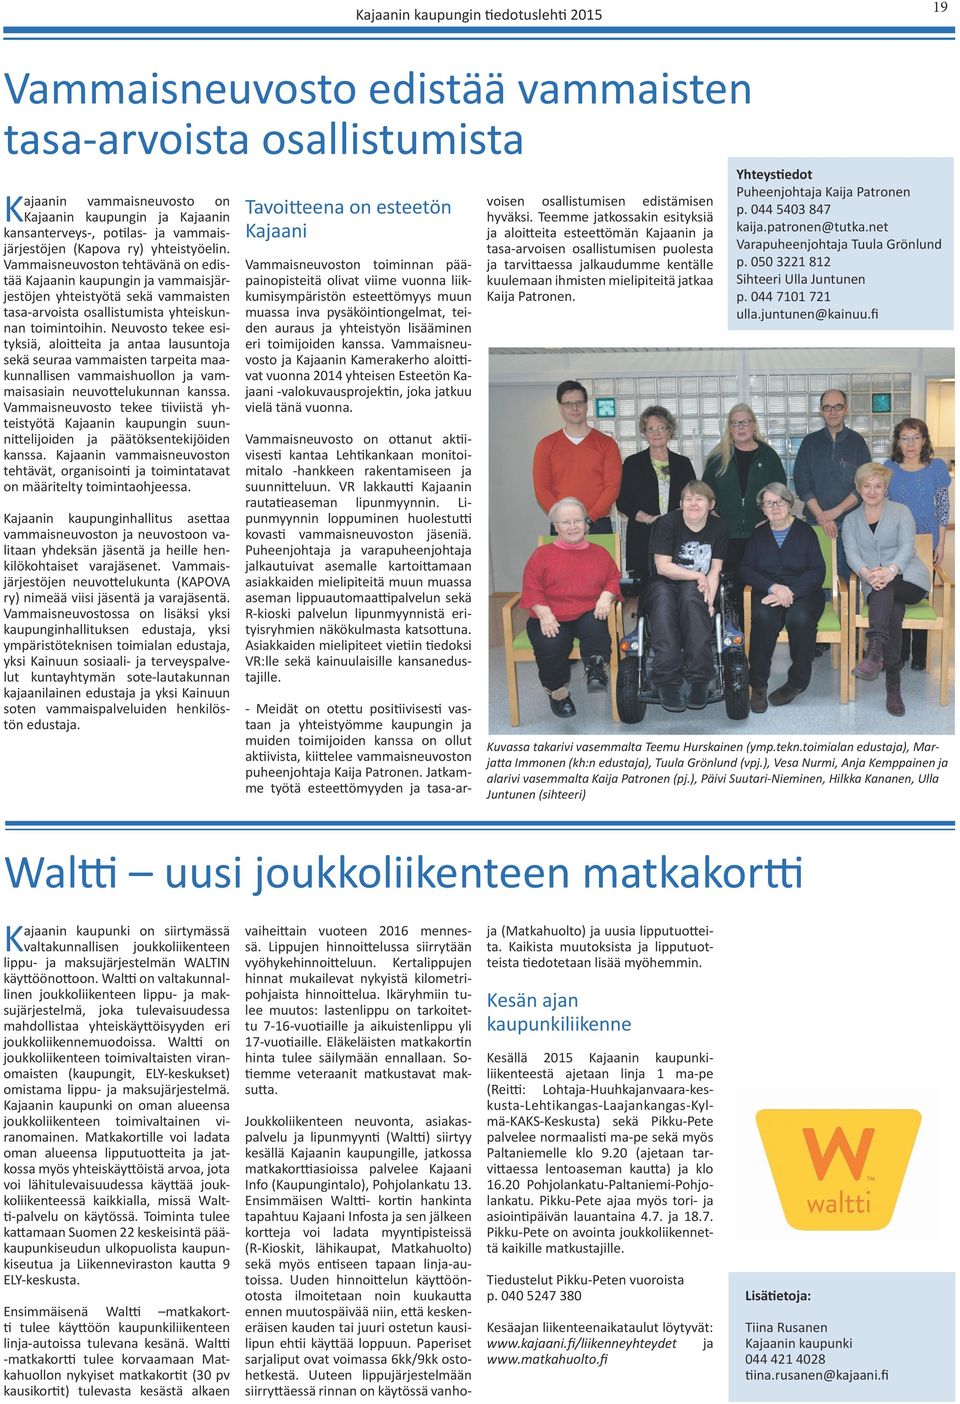 Vammaisneuvoston tehtävänä on edistää Kajaanin kaupungin ja vammaisjärjestöjen yhteistyötä sekä vammaisten tasa-arvoista osallistumista yhteiskunnan toimintoihin.